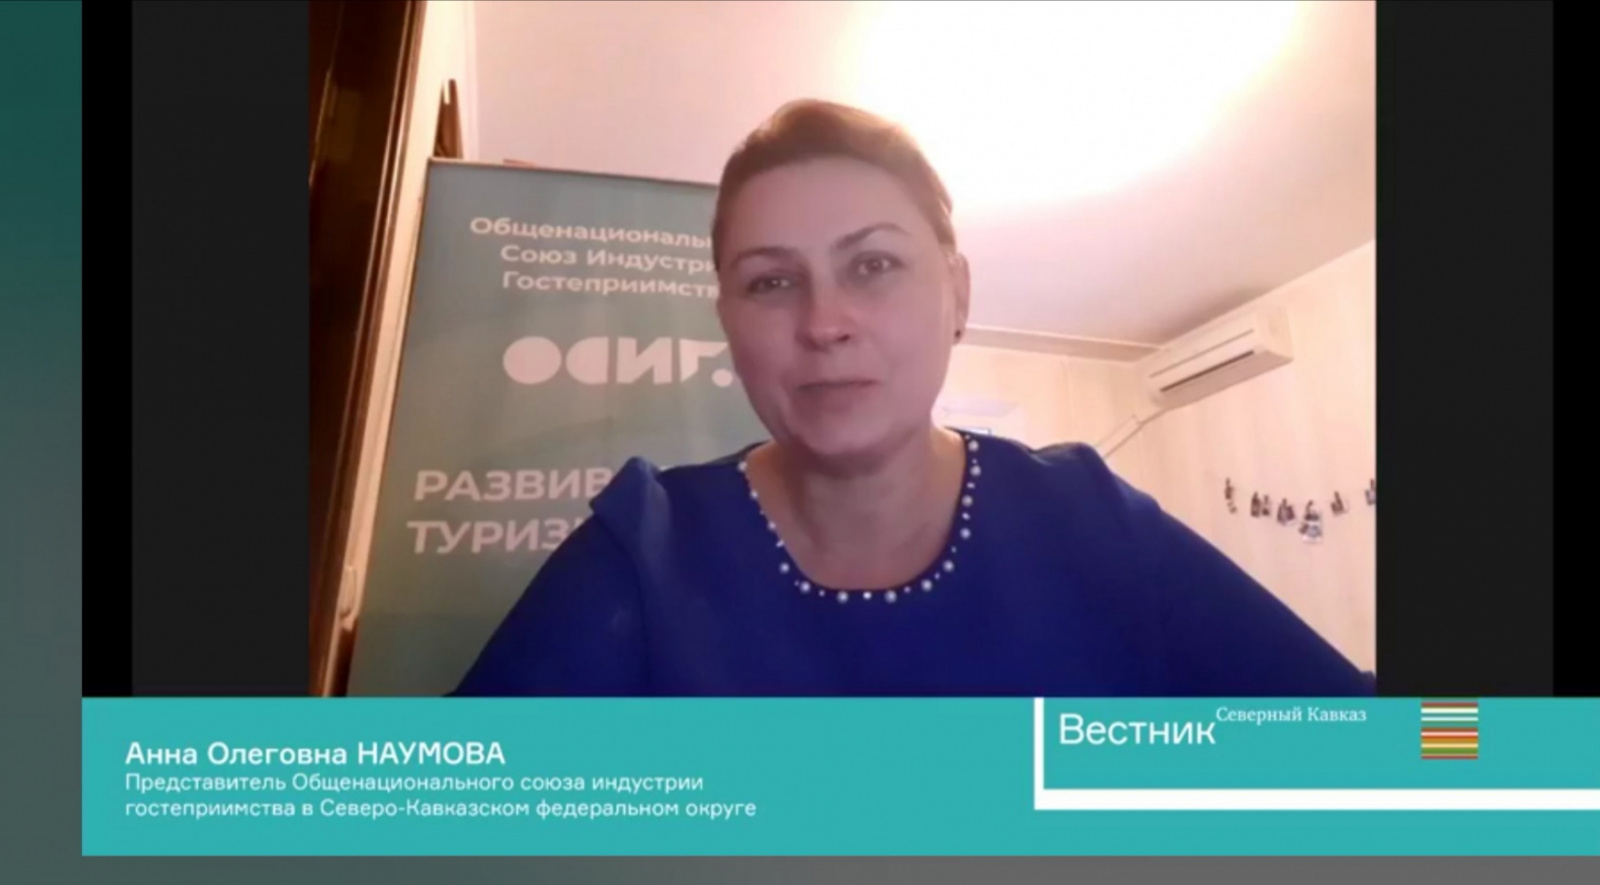 Анна Наумова: «Авторские туры следует ввести в законодательное поле». ЕвроМедиа